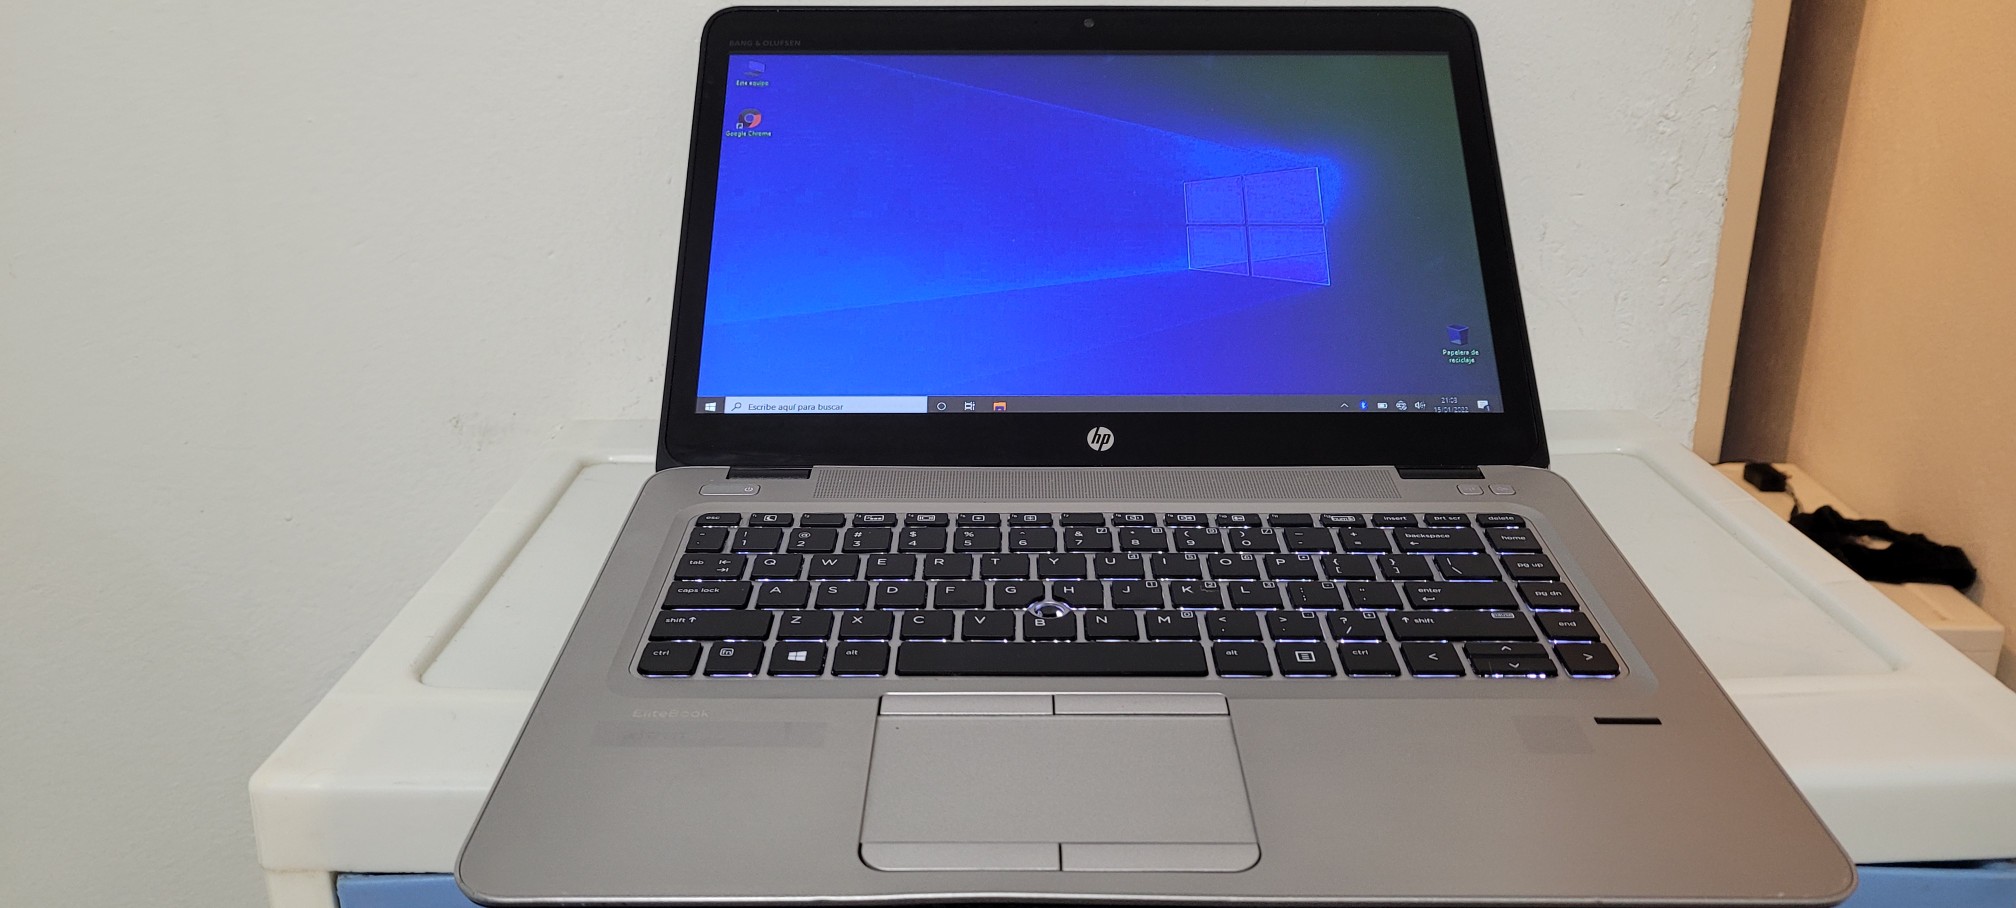 computadoras y laptops - Laptop Touch hp Core i5 7ma Gen Ram 8gb ddr4 Disco 128gb SSD Y 320gb Fulk 0